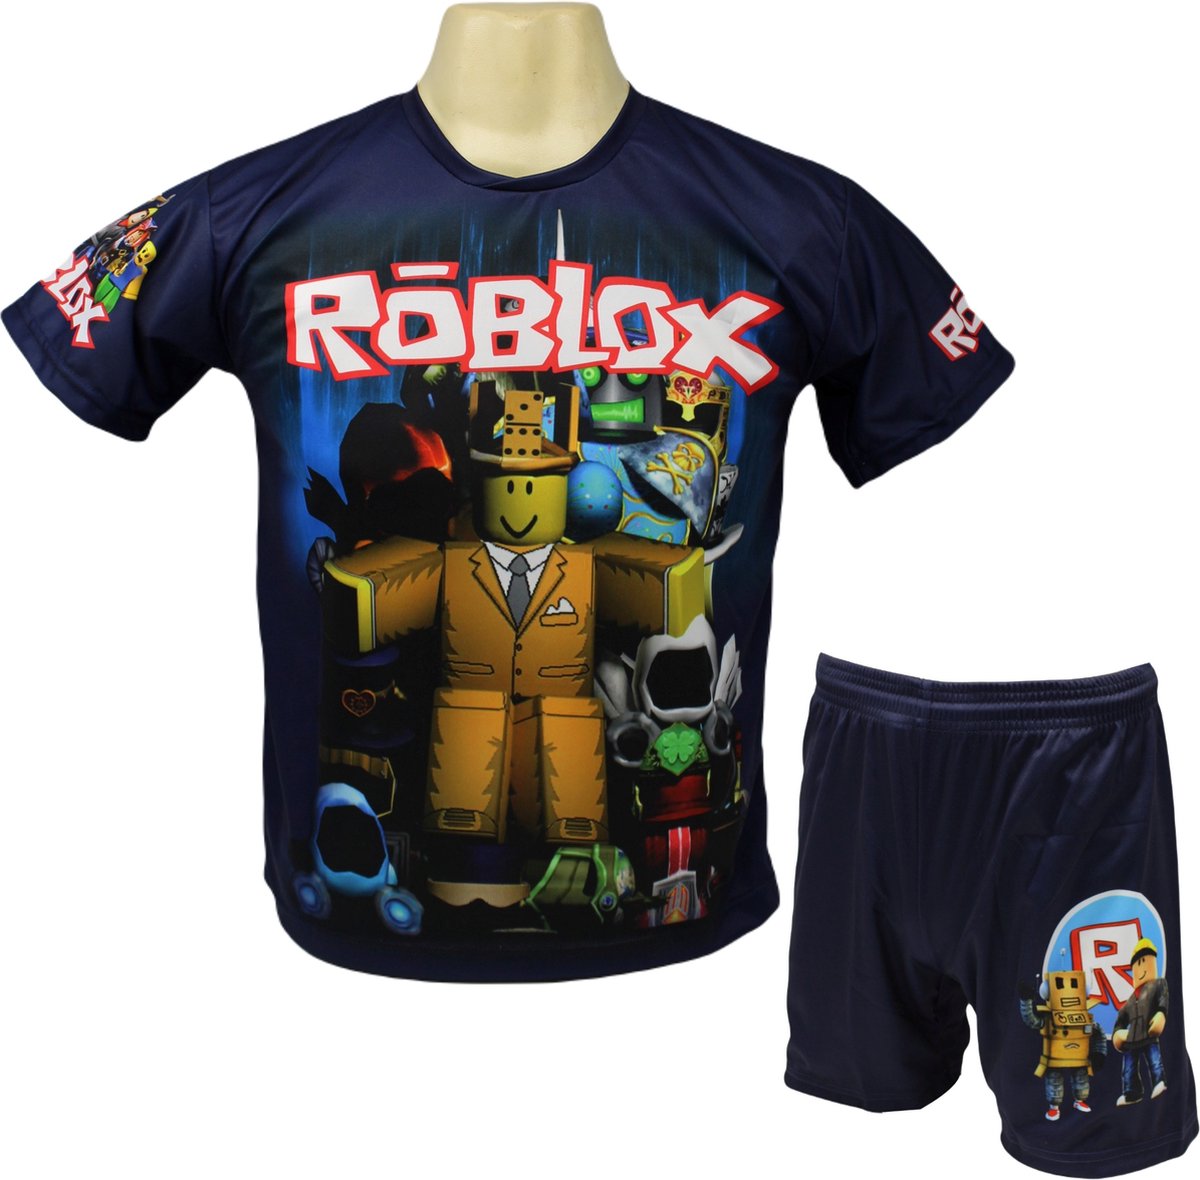 Roblox Shirt en Broekje - Roblox Kleding Tenue - Kinder tot Volwassen maten - Maat 104